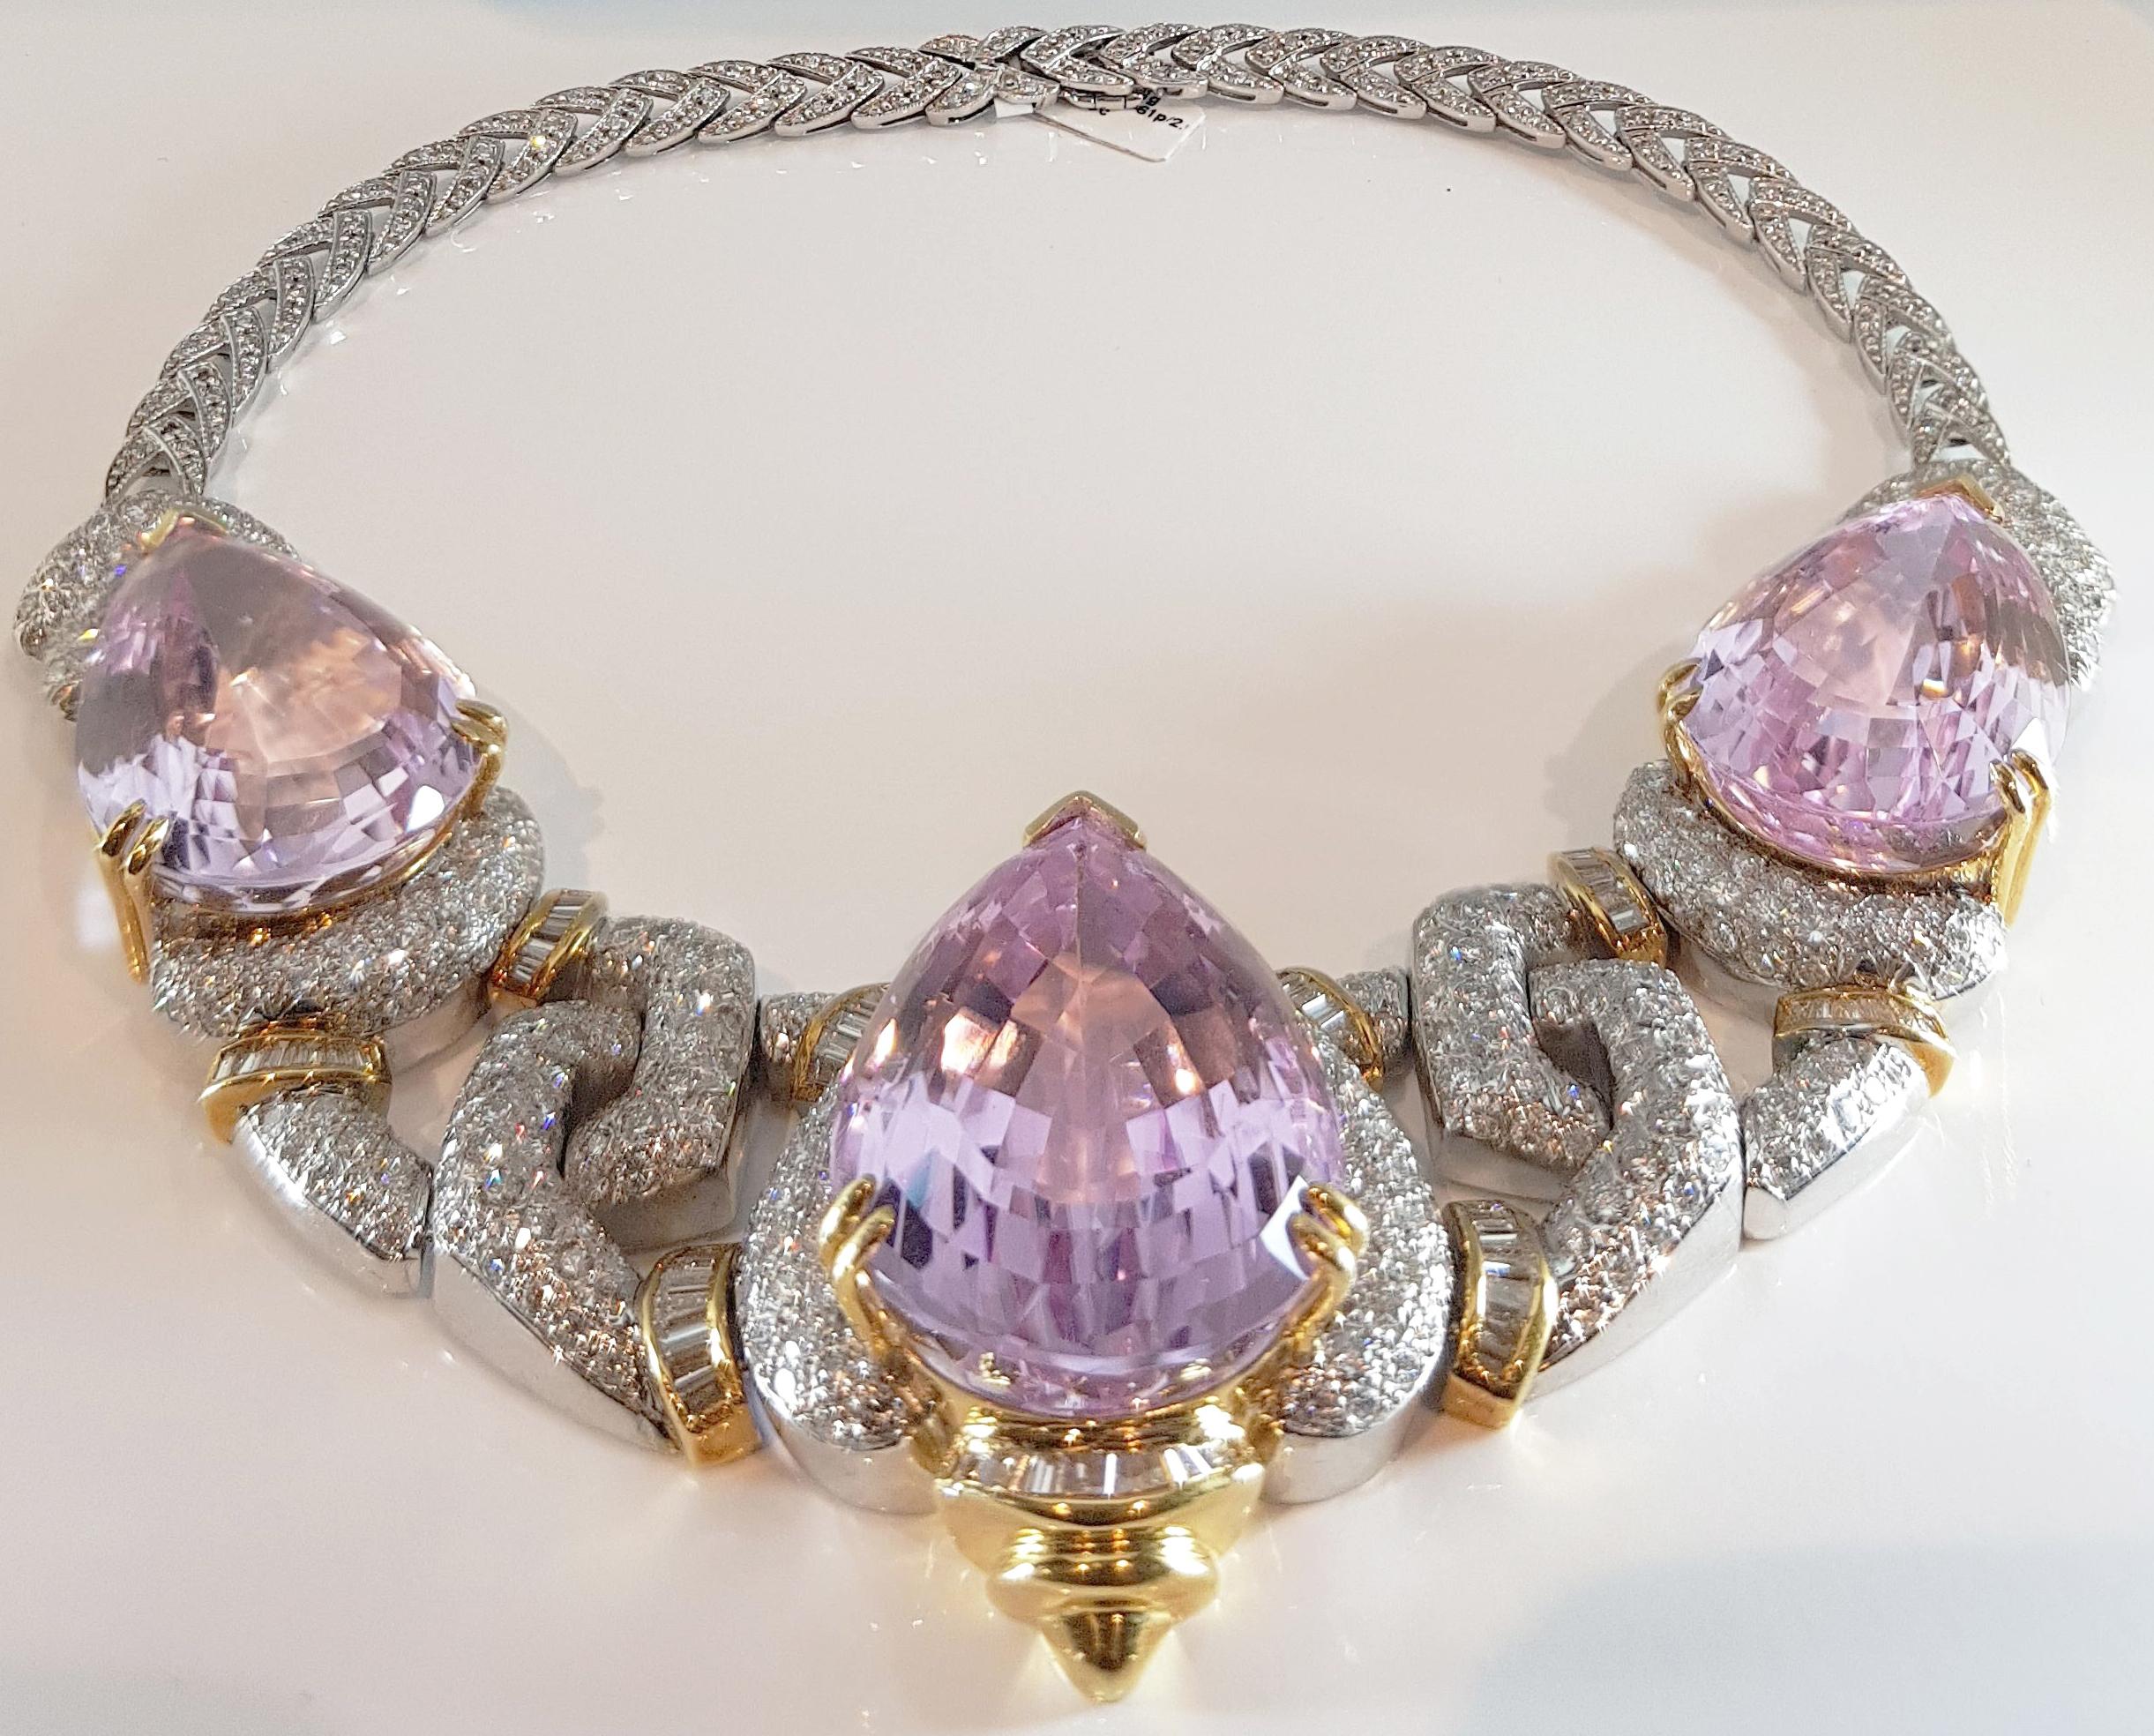 Atemberaubende Kunzit-Halskette bestehend aus 3 birnenförmigen Beautiful lilac-pink 20ct Kunzites.

Kunzit ist die bekannteste Varietät des Minerals Spodumen. 
Er ist nach dem famosen Gemmologen George Frederick Kunz benannt, 
der es als erster als